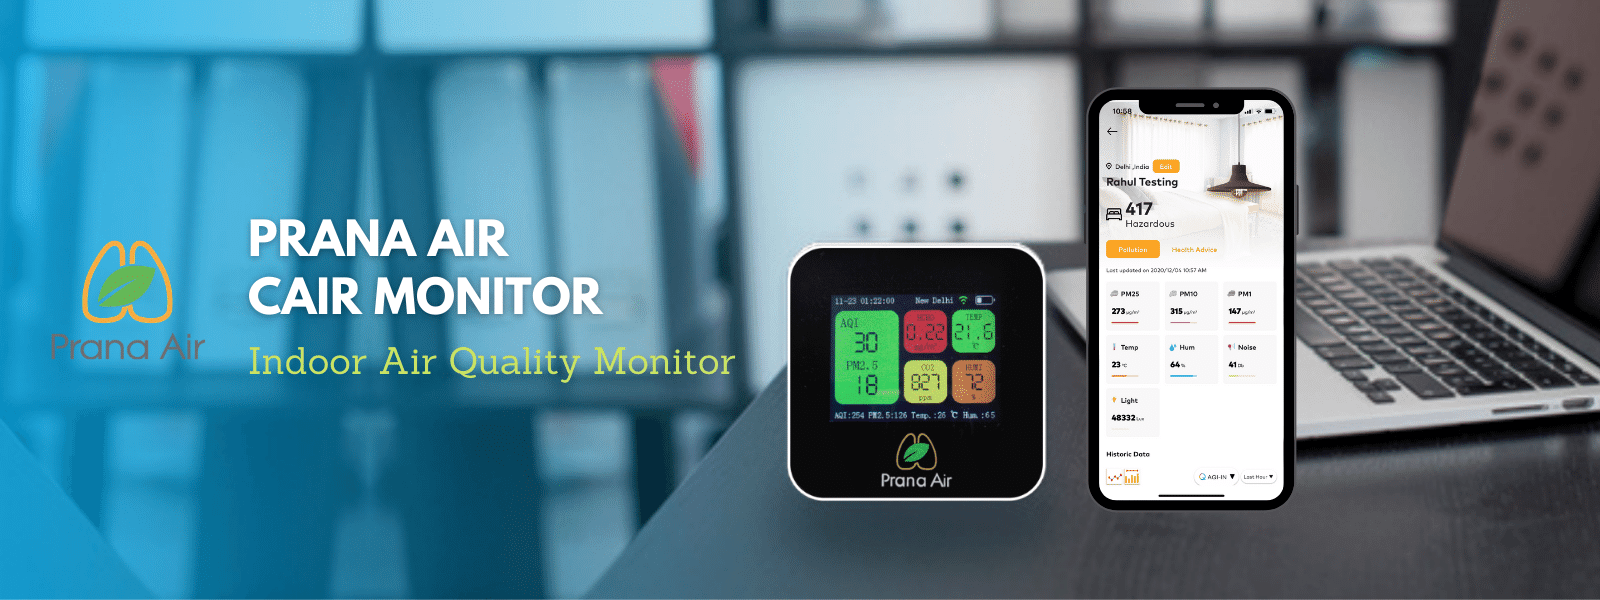 monitor de qualidade do ar prana